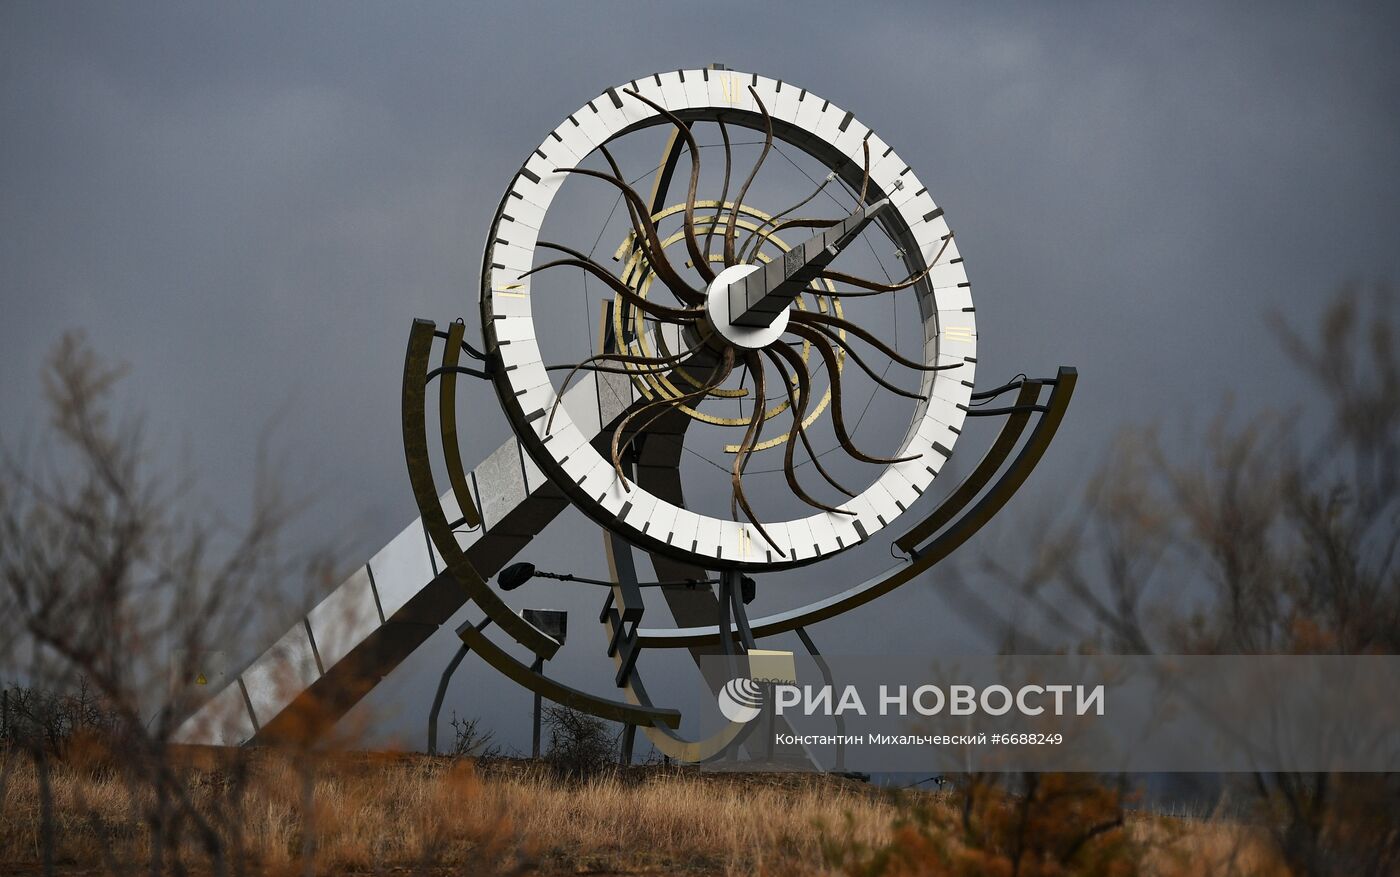 Арт-объект "Время" в Крыму